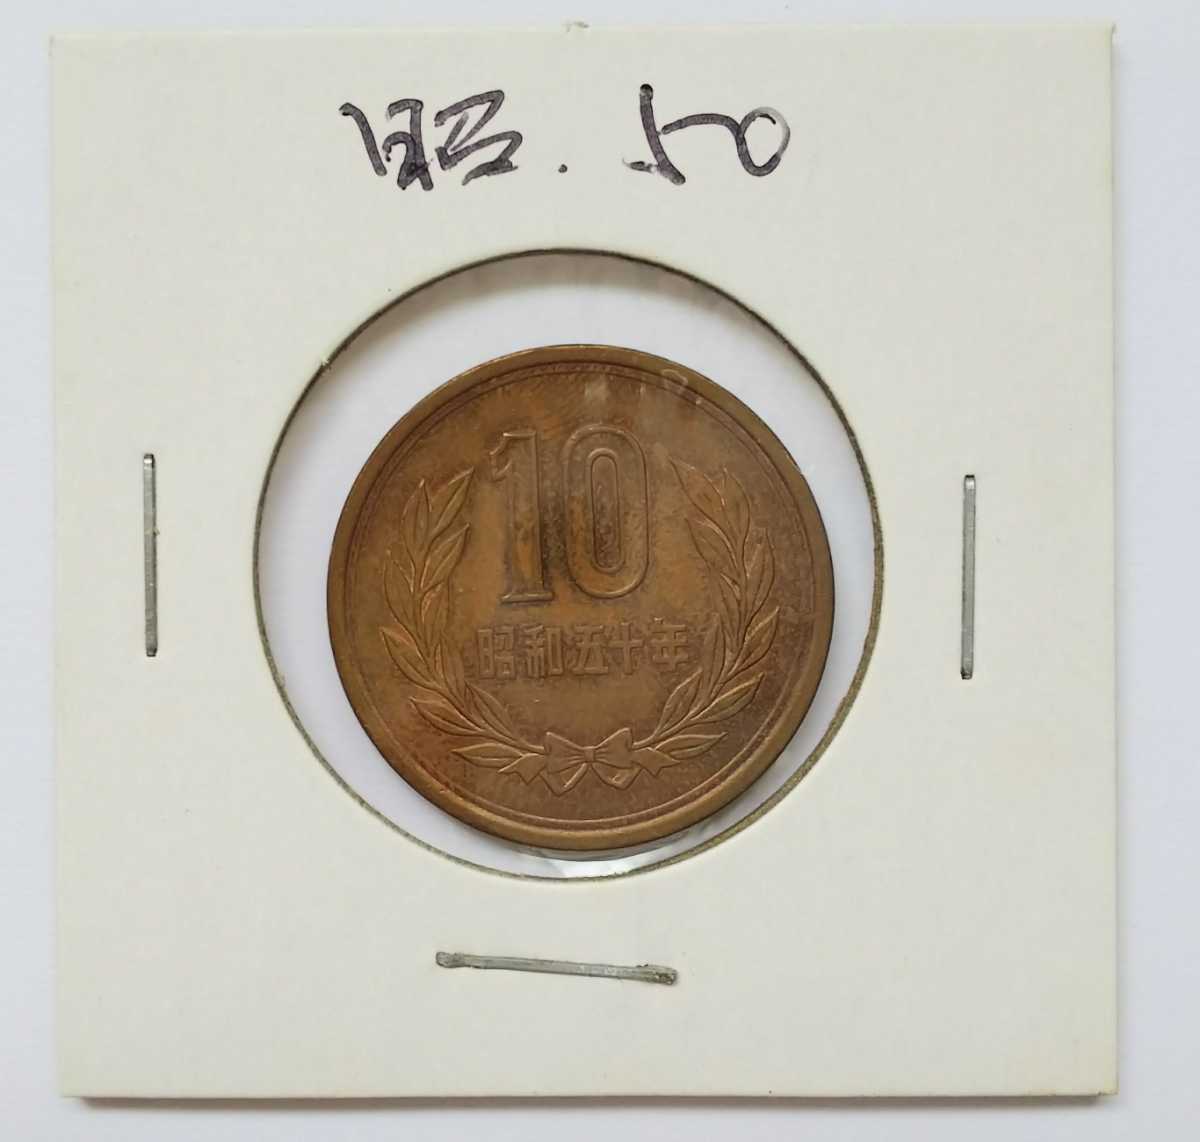 02-09_S50:10円青銅貨(ギザなし) 1975年[昭和50年] 1枚 紙ケース入り*_画像1